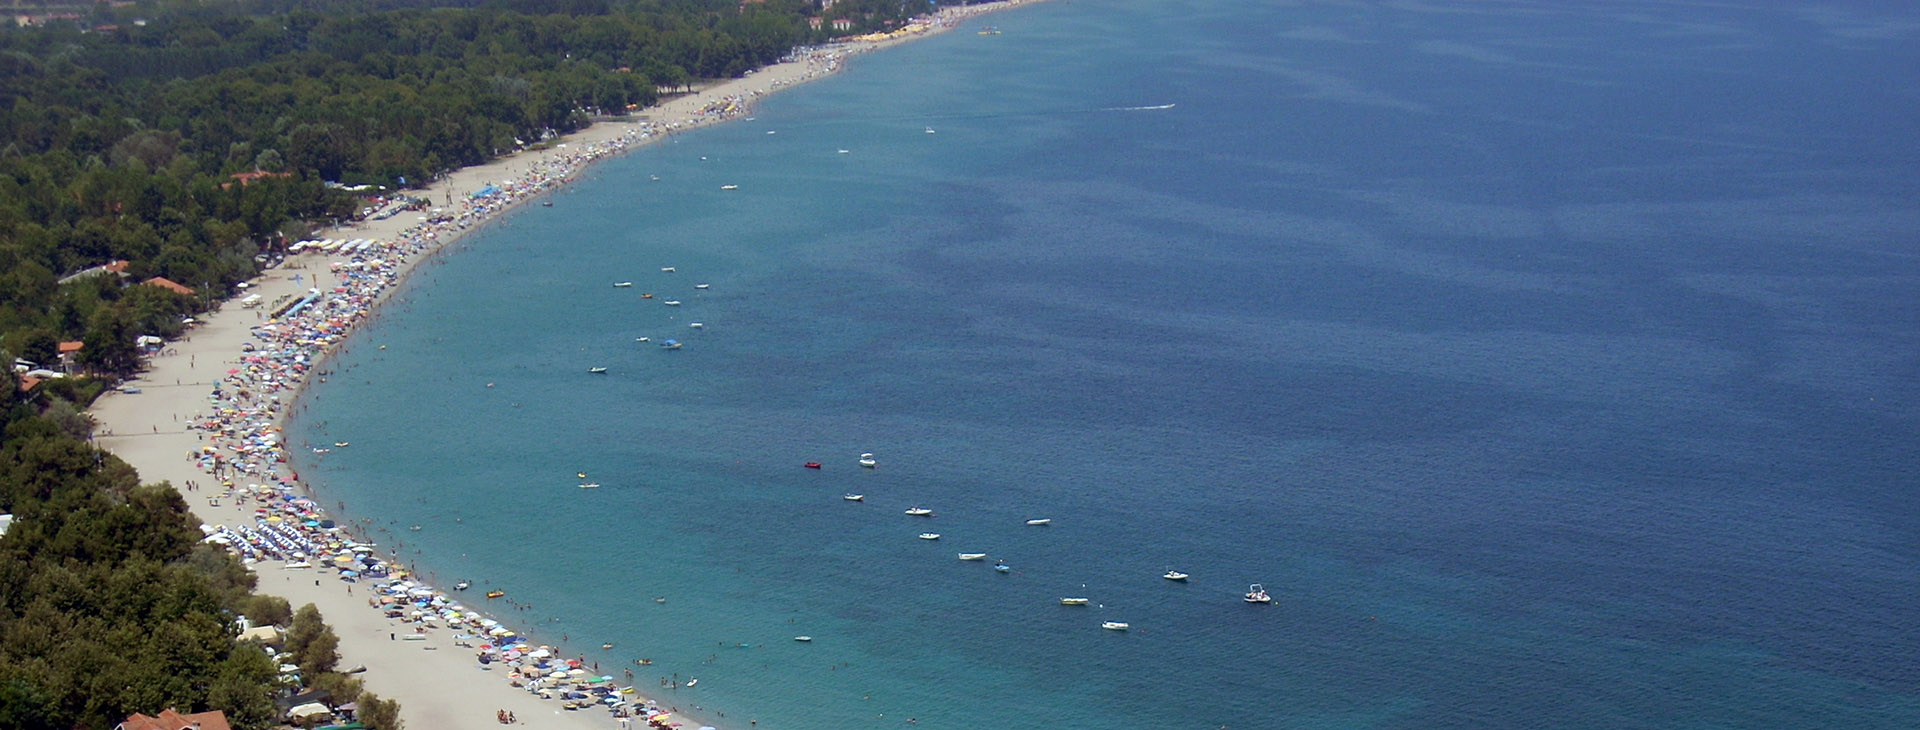 Scotina beach near Platamonas, Pieria